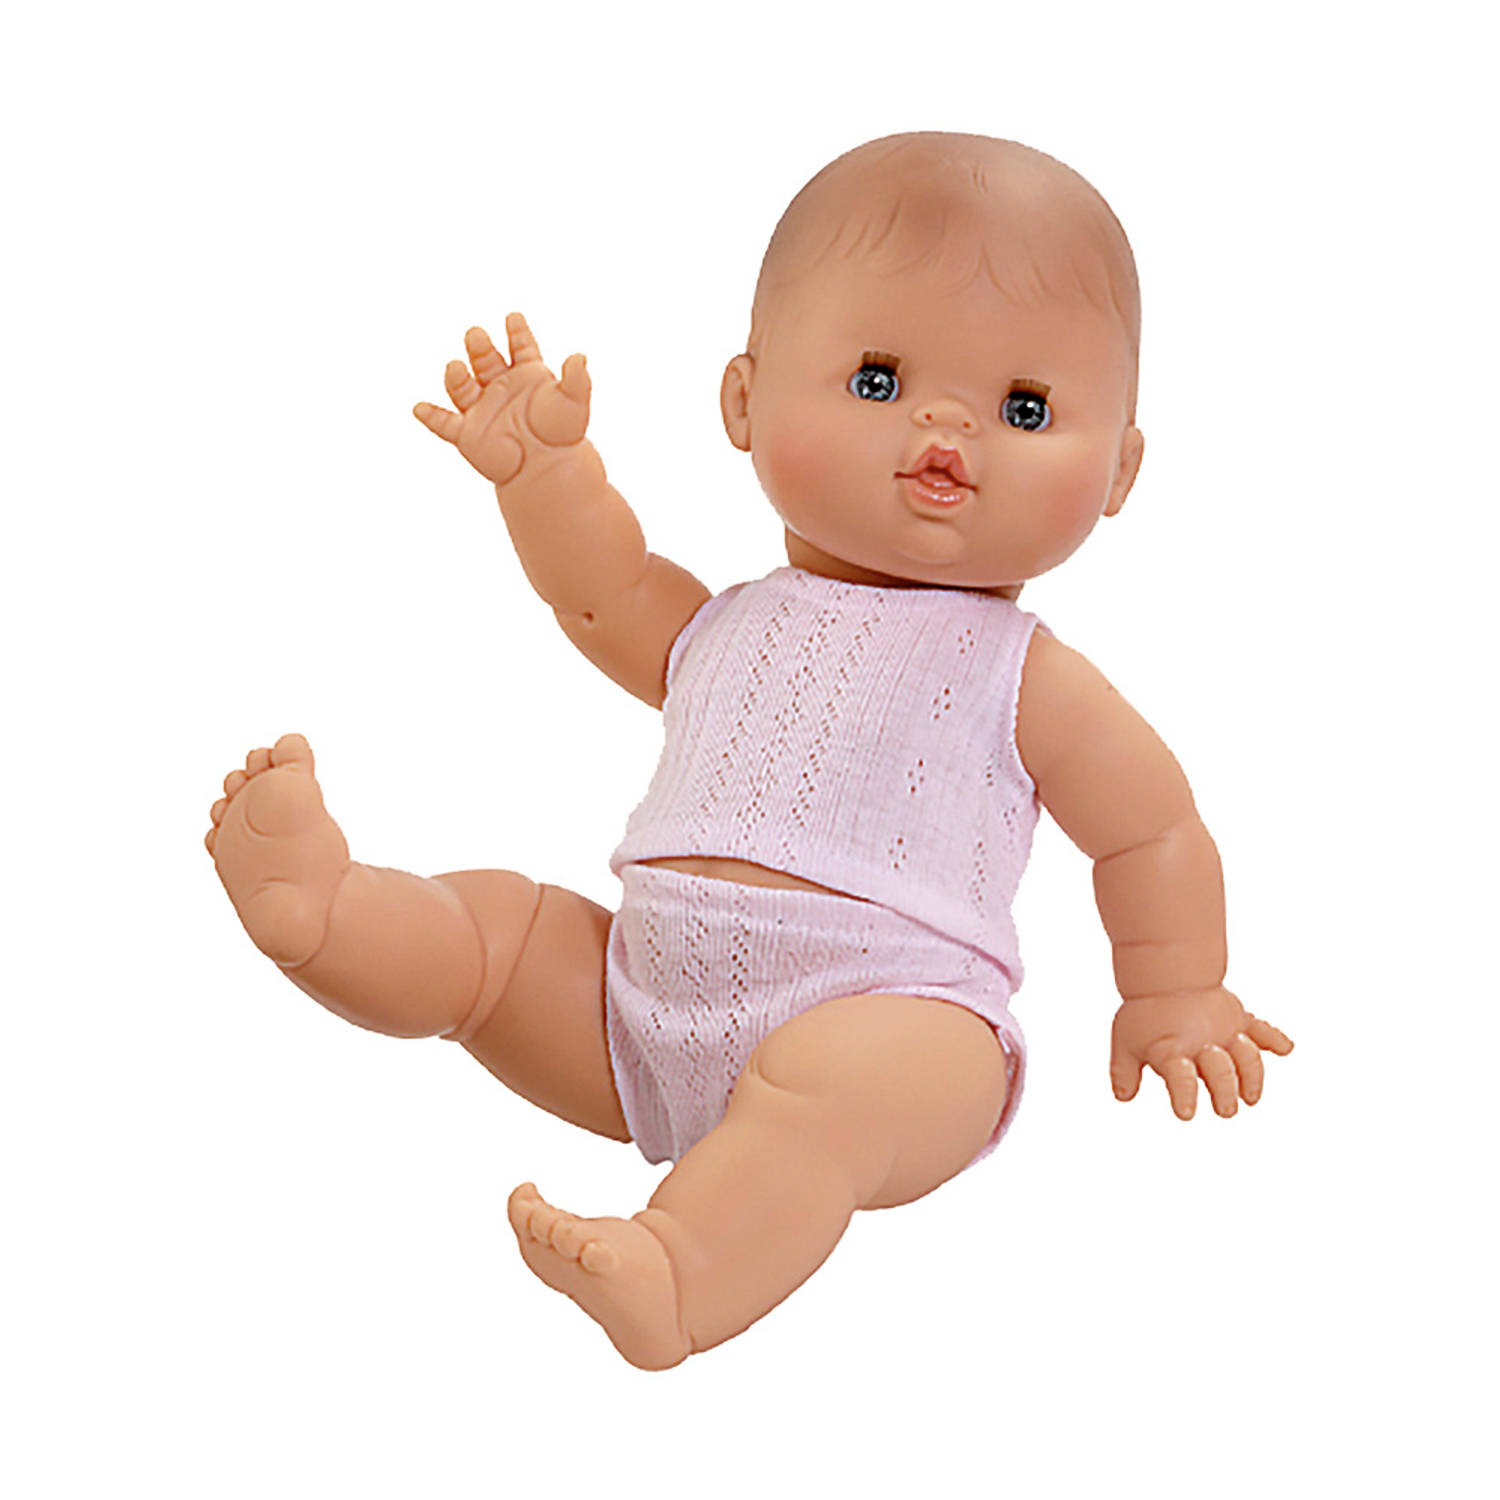 Paola Reina Gordi Babypop Meisje Wit Pyjama - 34 cm